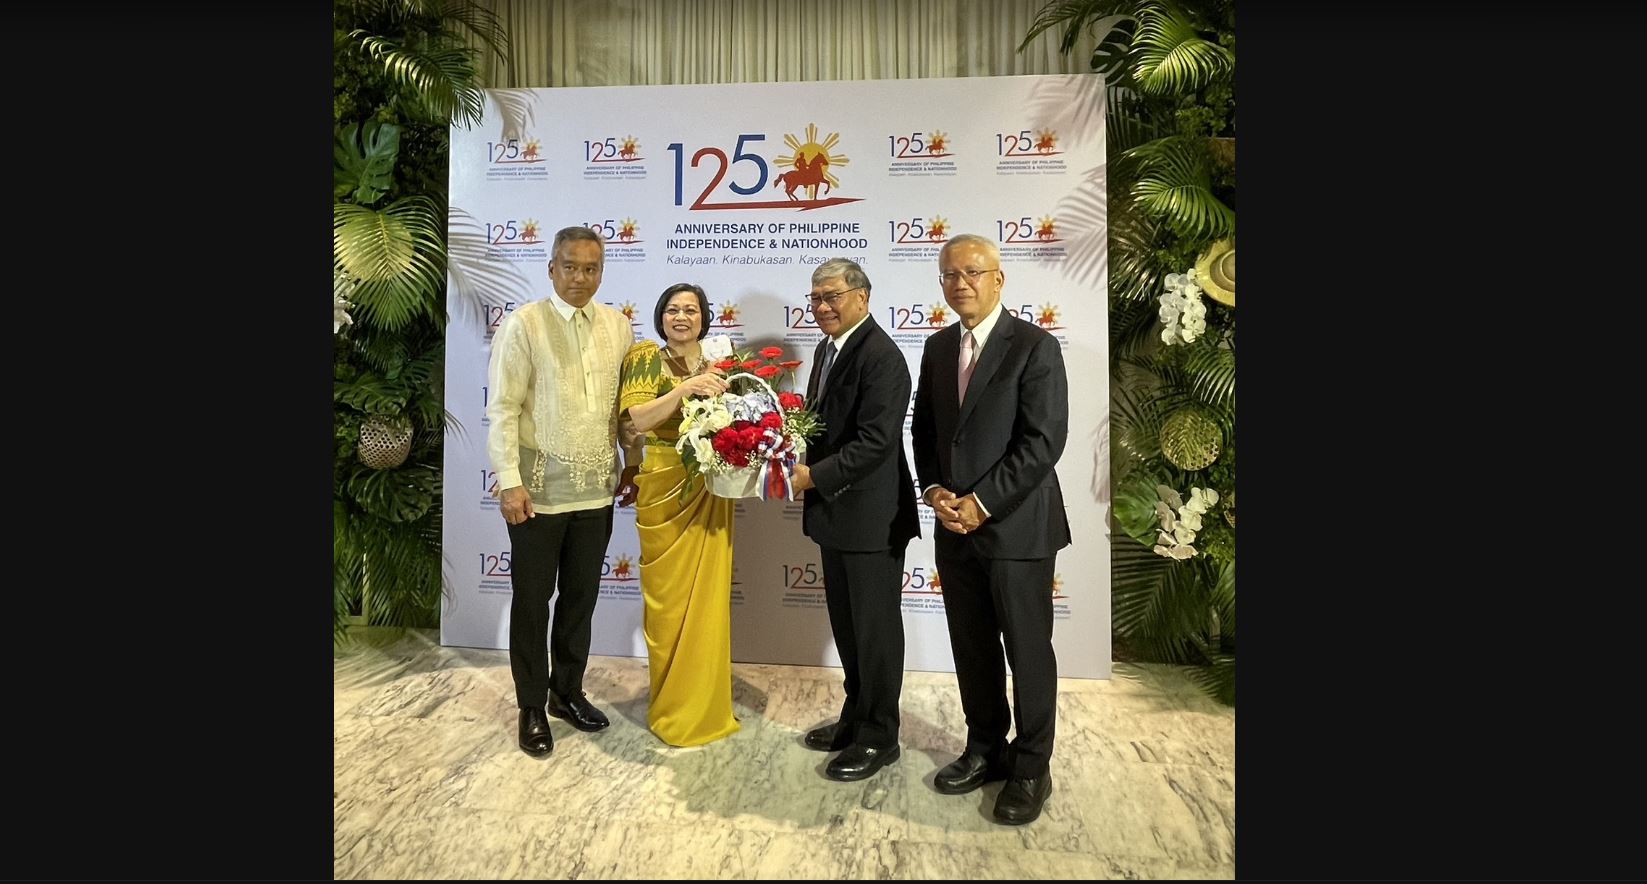 ประธานกลุ่มมิตรภาพสมาชิกรัฐสภาไทย-ฟิลิปปินส์ เข้าร่วมงานครบรอบ 125 ปี วันประกาศอิสรภาพของฟิลิปปินส์